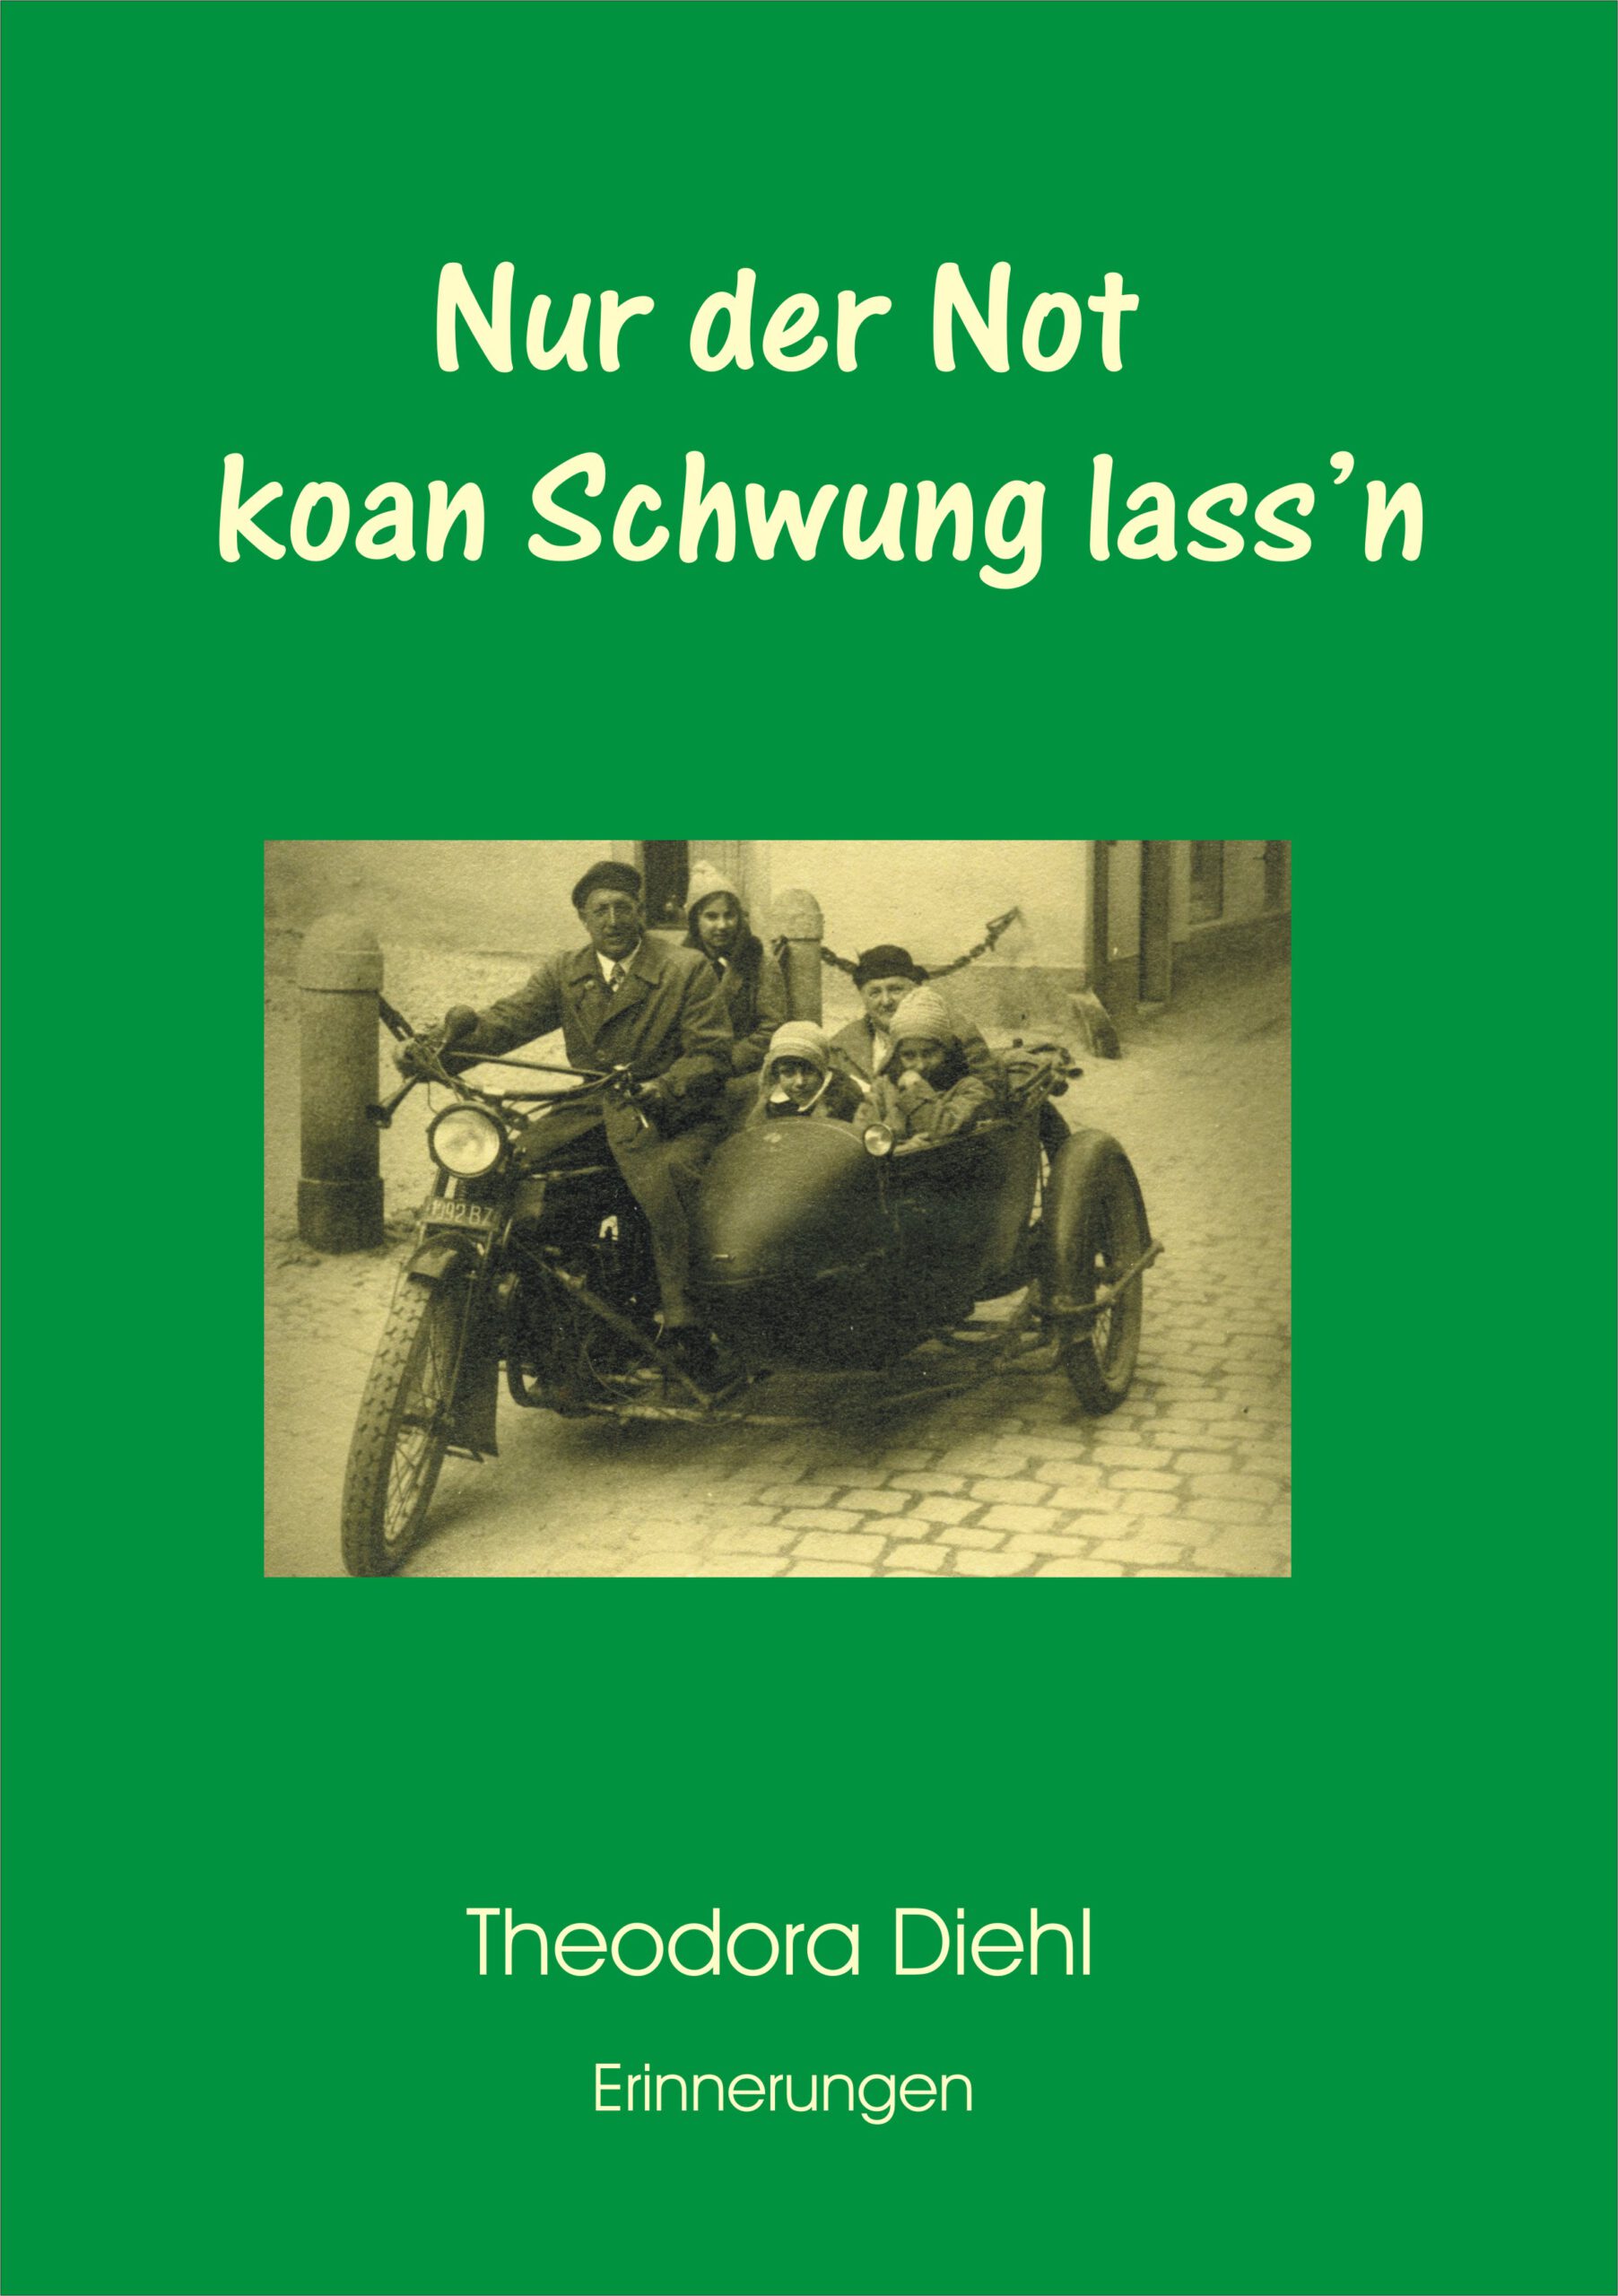 Theodora Diehl: Buch "Nur der Not koan Schwung lass'n"